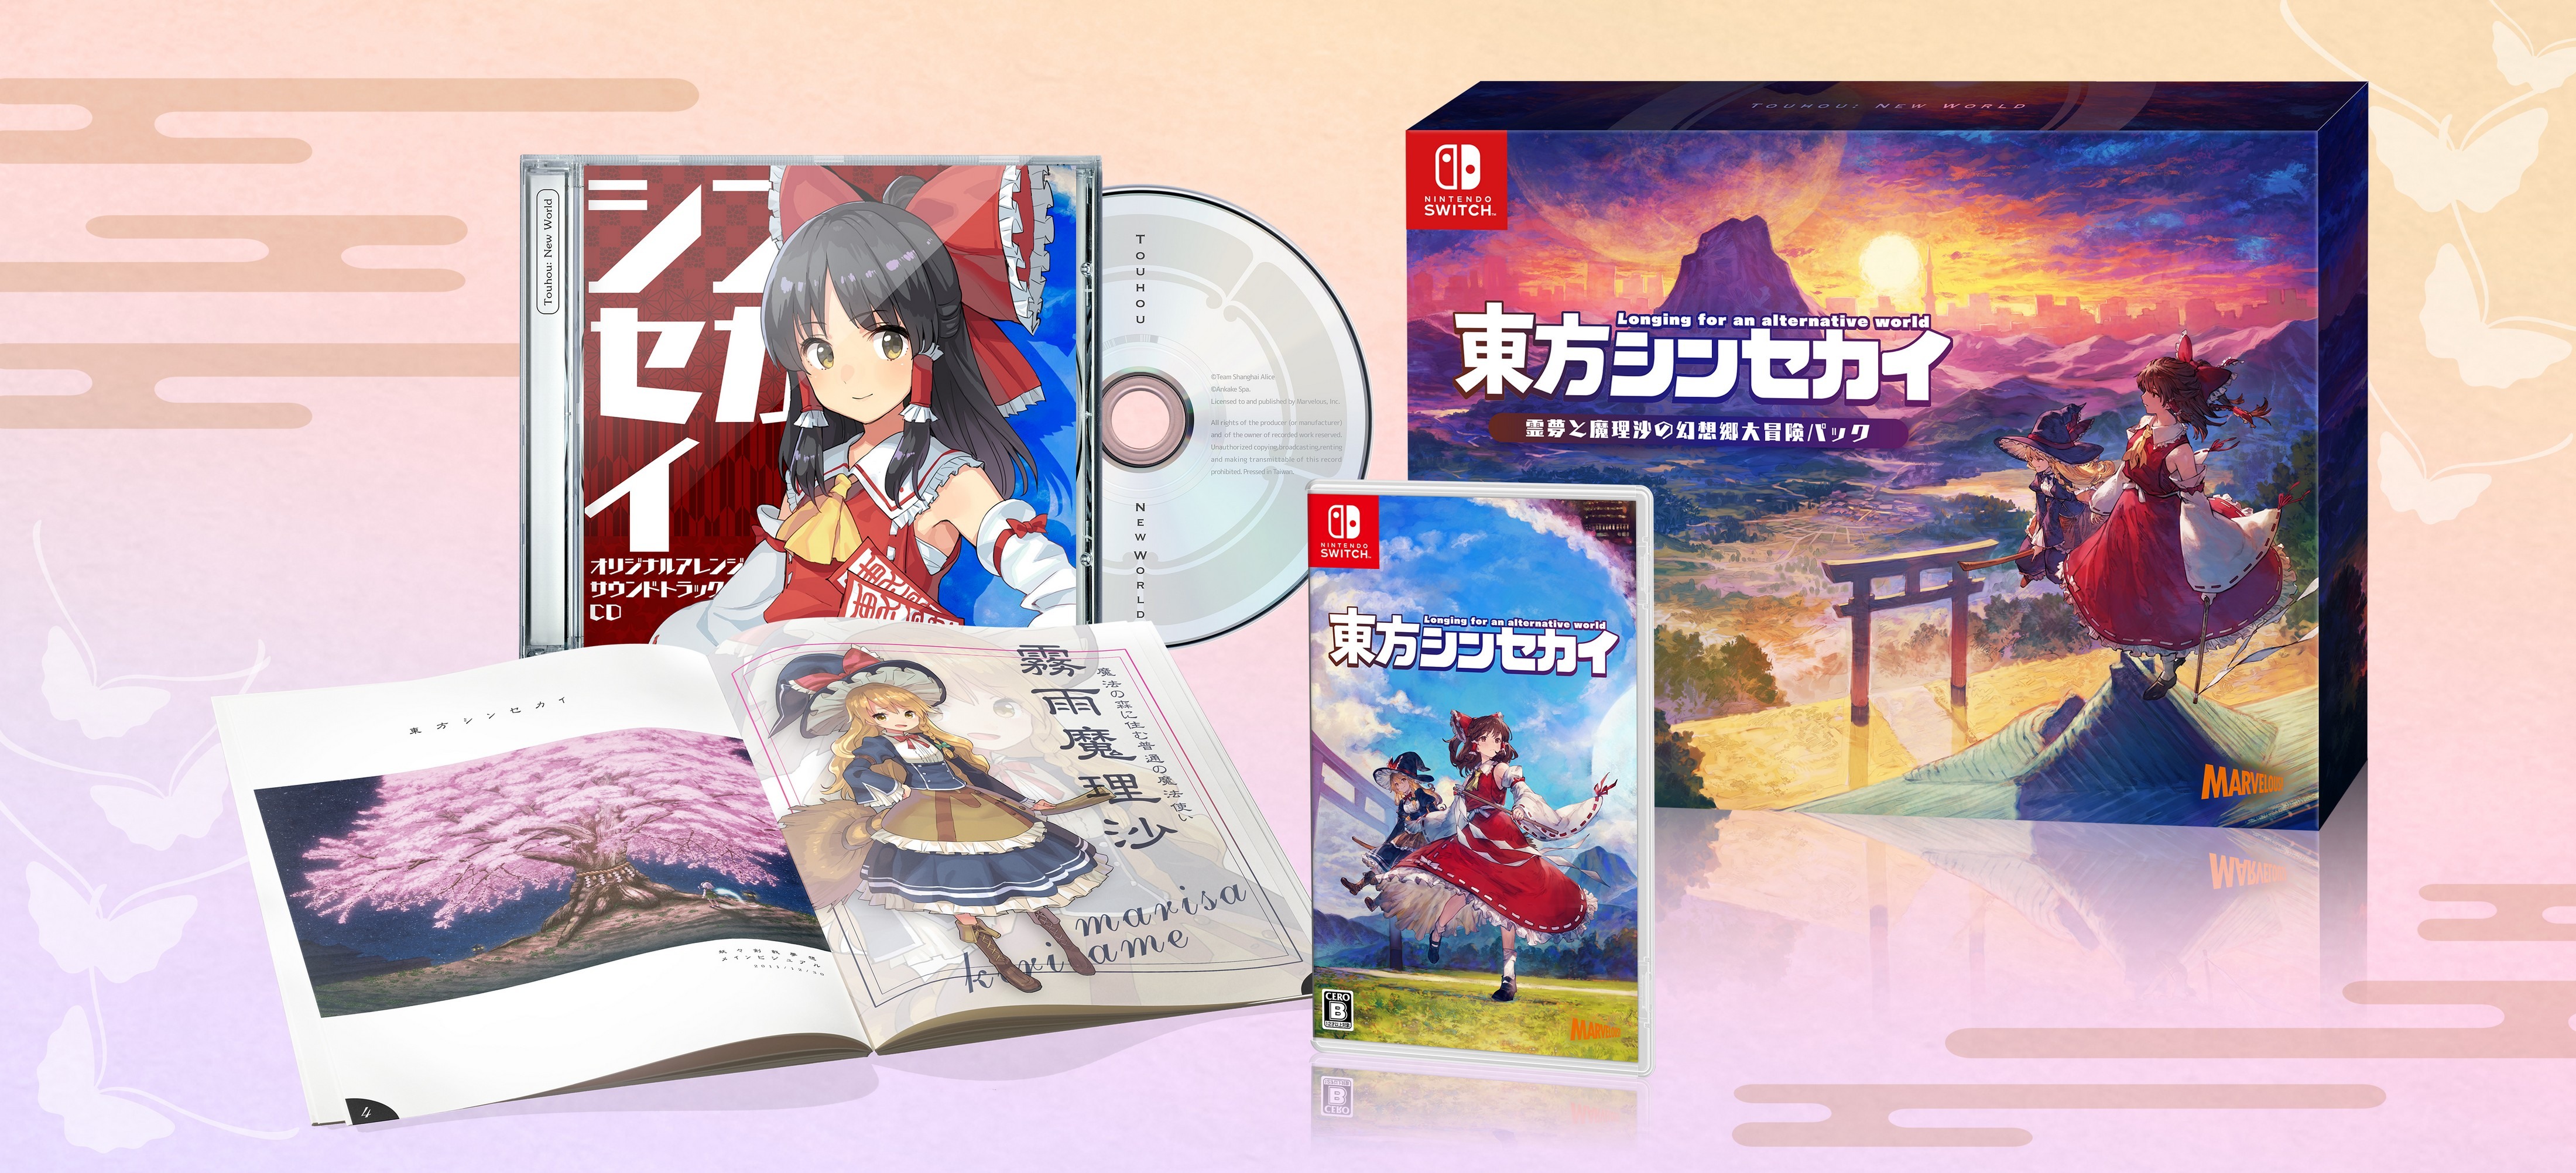 彈幕動作RPG《東方NewWorld》中文版將於7月發售